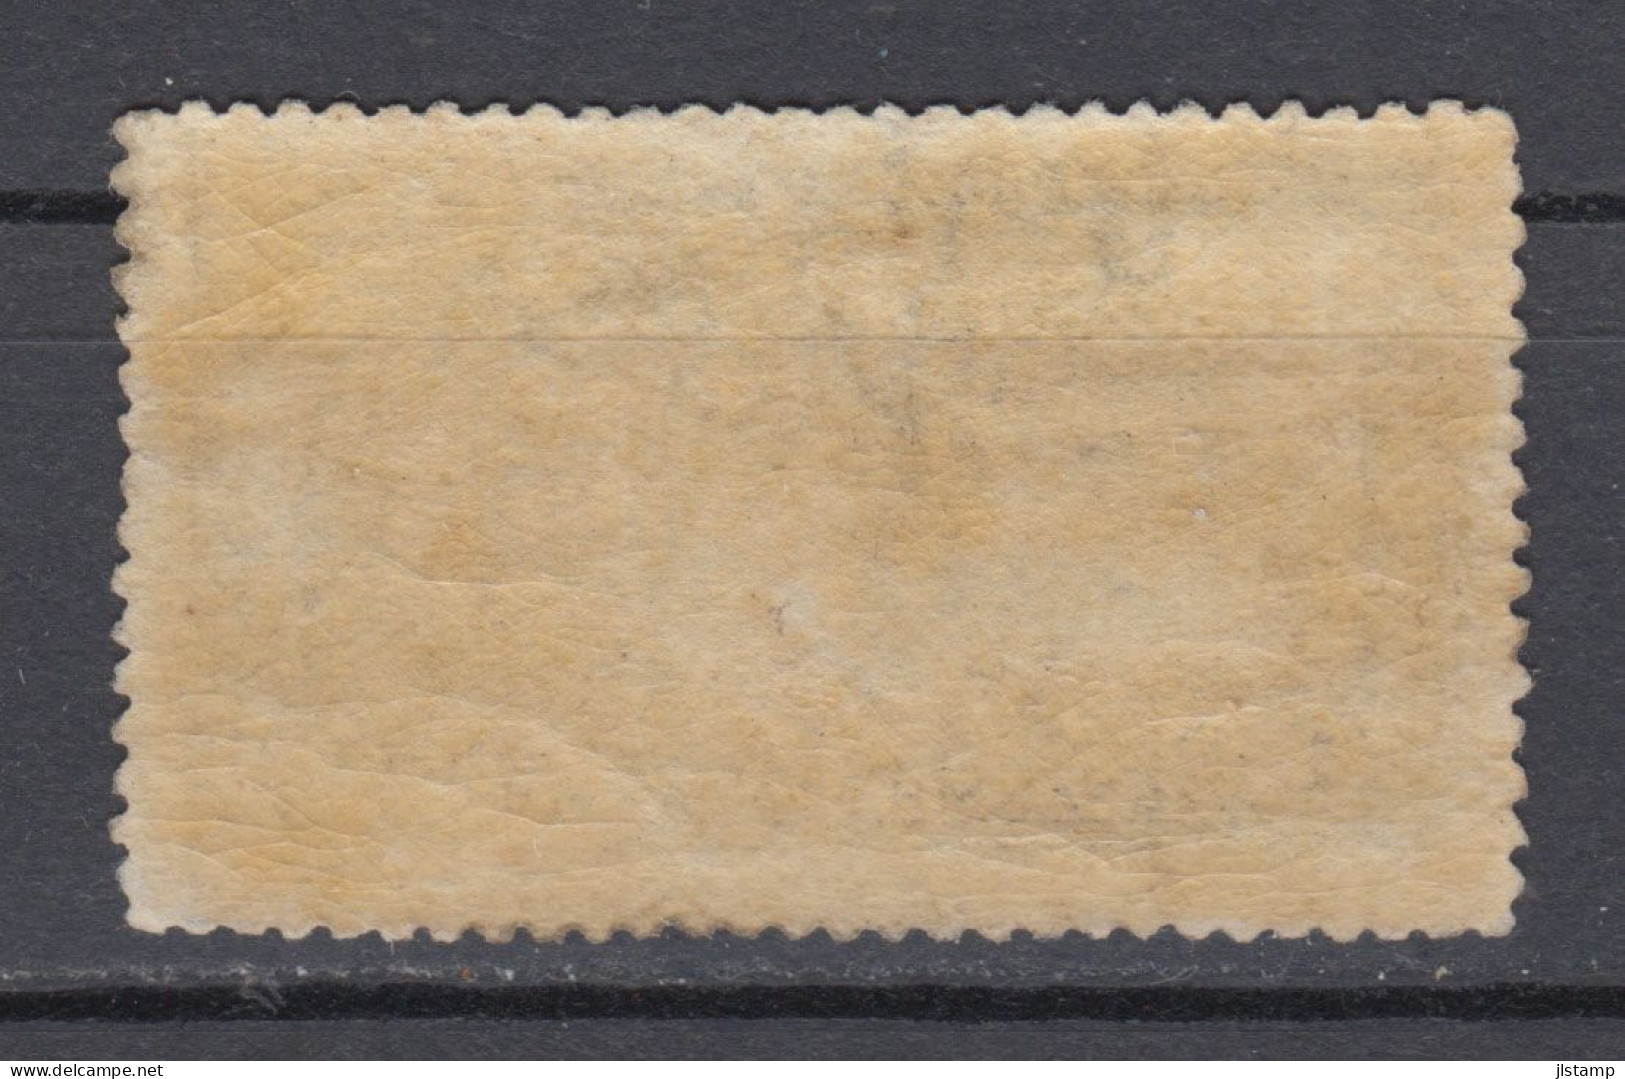 Greece 1906 Olympic Games Stamp 1D,Scott#194,OG,MNH,F/VF - Nuevos